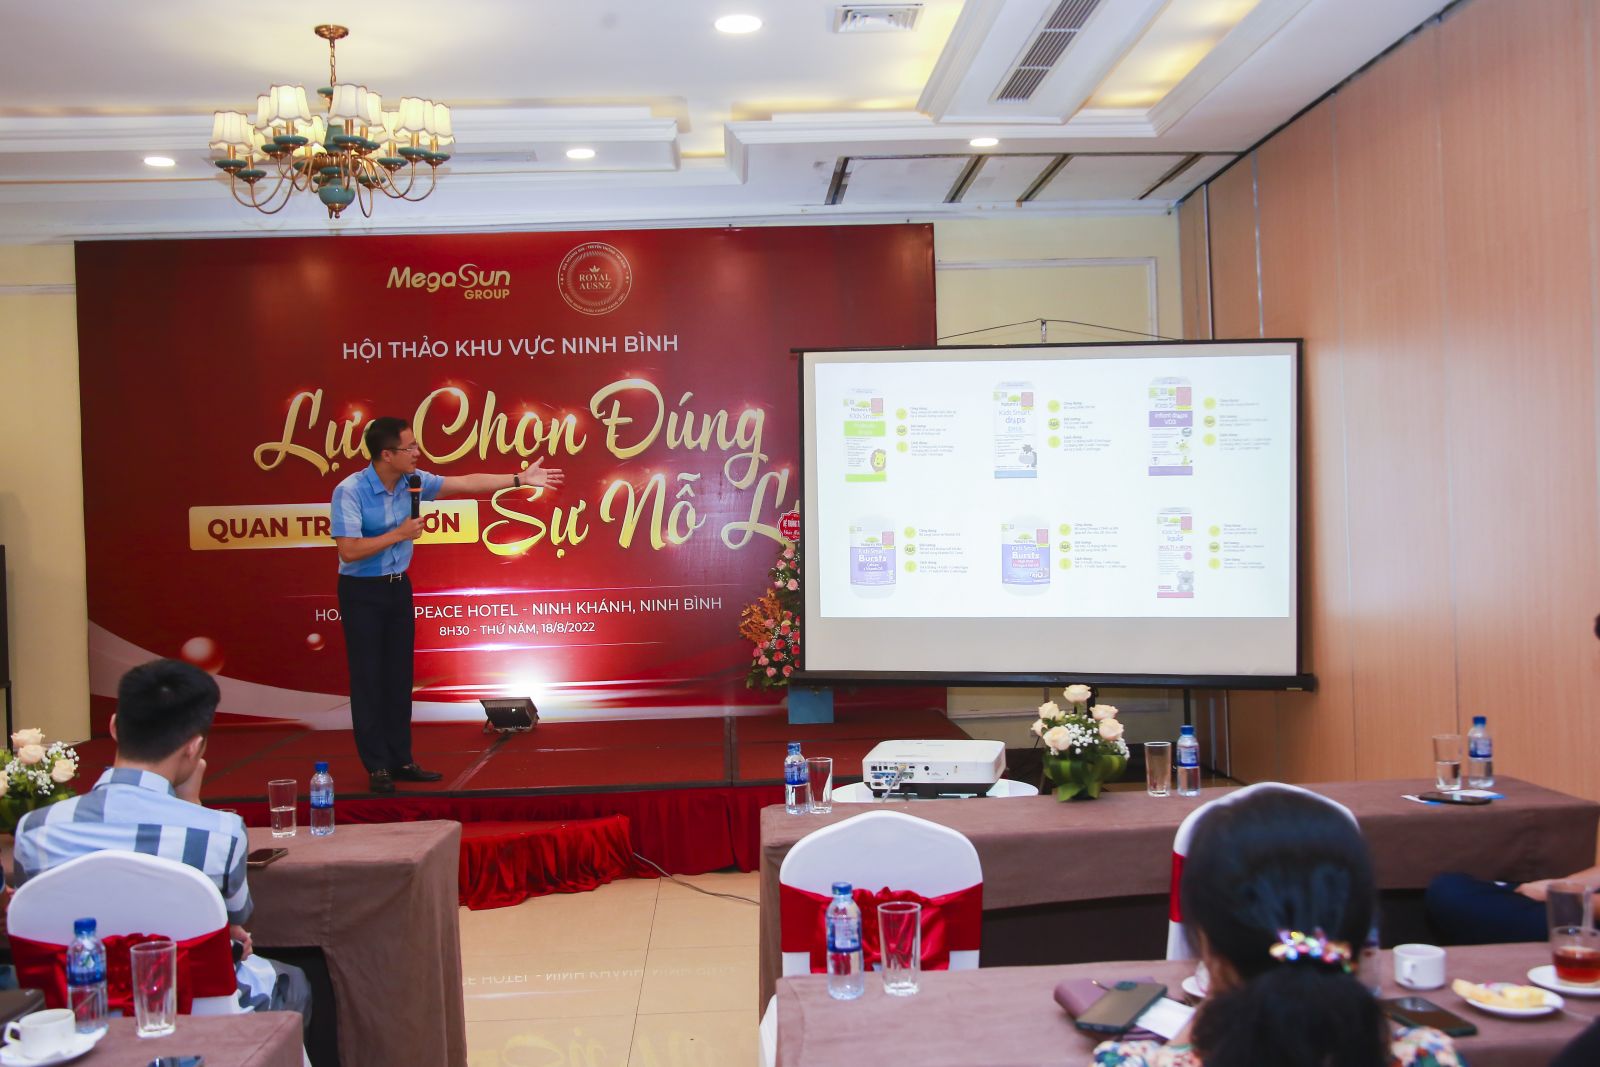  Chủ tịch Ngô – anh Nguyễn Đình Hiệp lên thay mặt Ban lãnh đạo Megasun Group lên chủ trì hội thảo